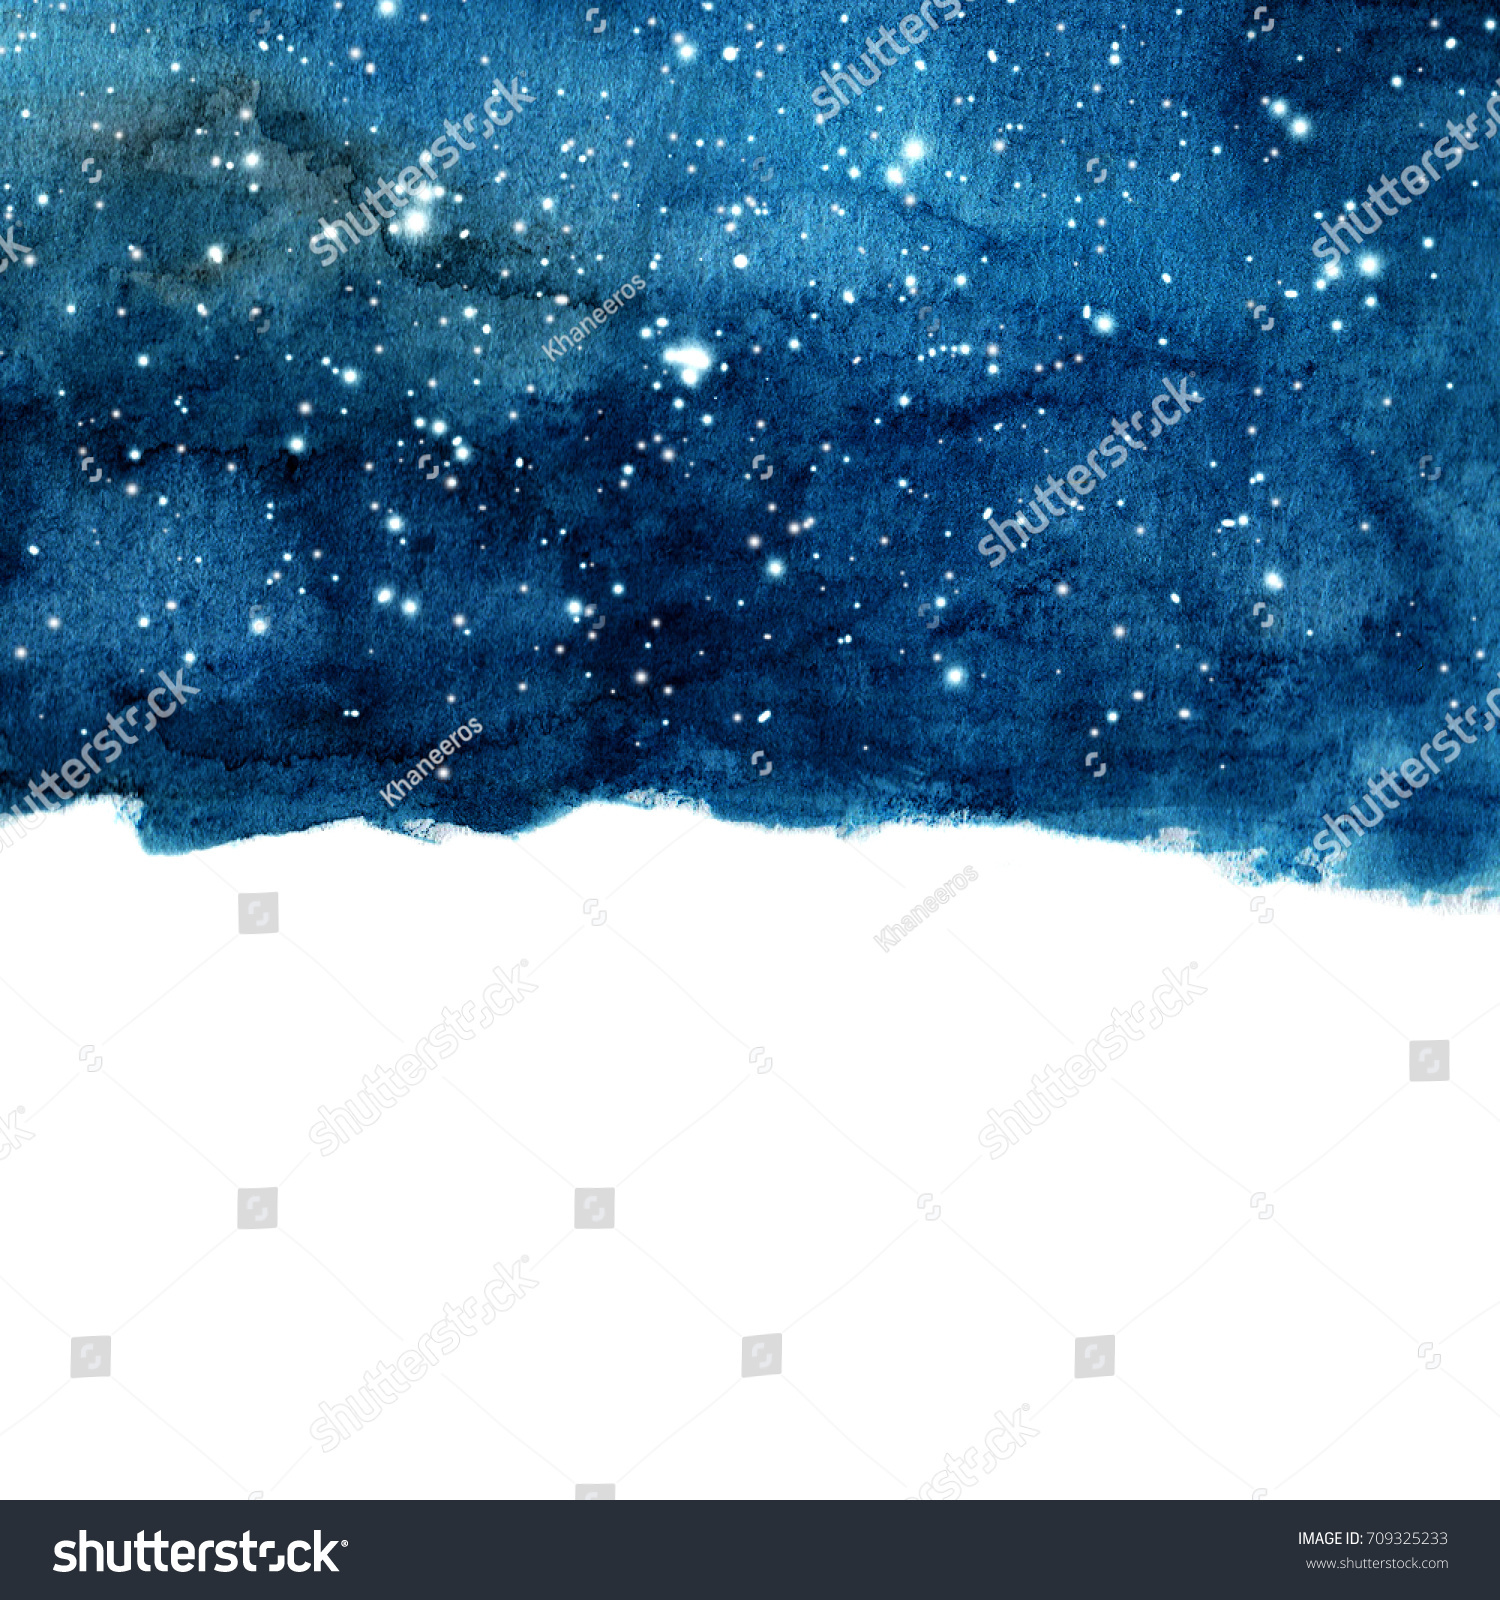 星の付いた水彩の夜空の背景 テキスト用のスペースを持つ宇宙レイアウト のイラスト素材